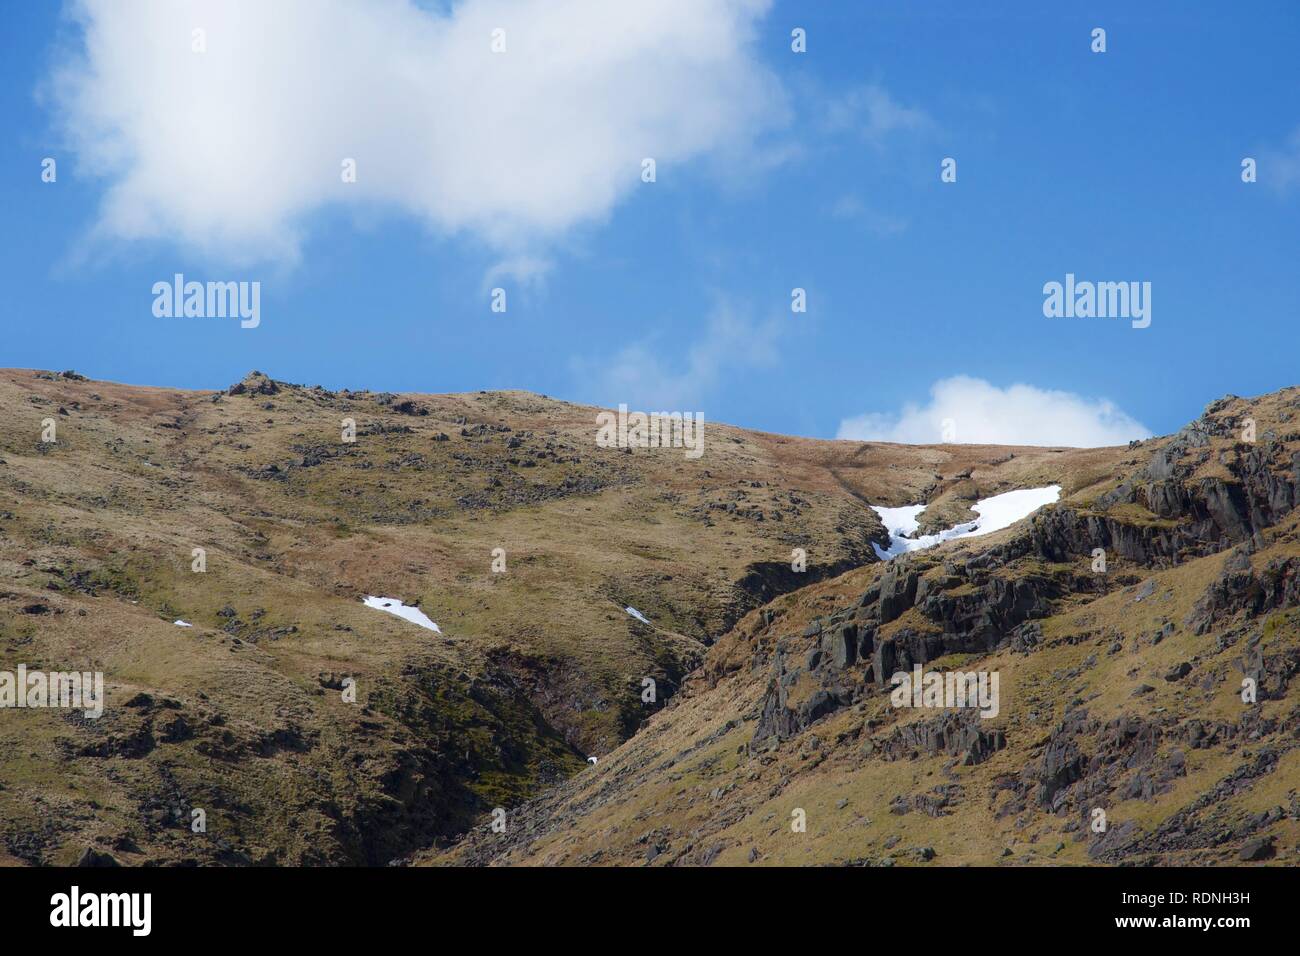 Steilen Tal zwischen Felsen: Mountain Stream (Beck) zwischen Felsen und grünen Heide. Blauer Himmel mit weißen Wolken, Felsen und einige Berggipfel. Sn Stockfoto